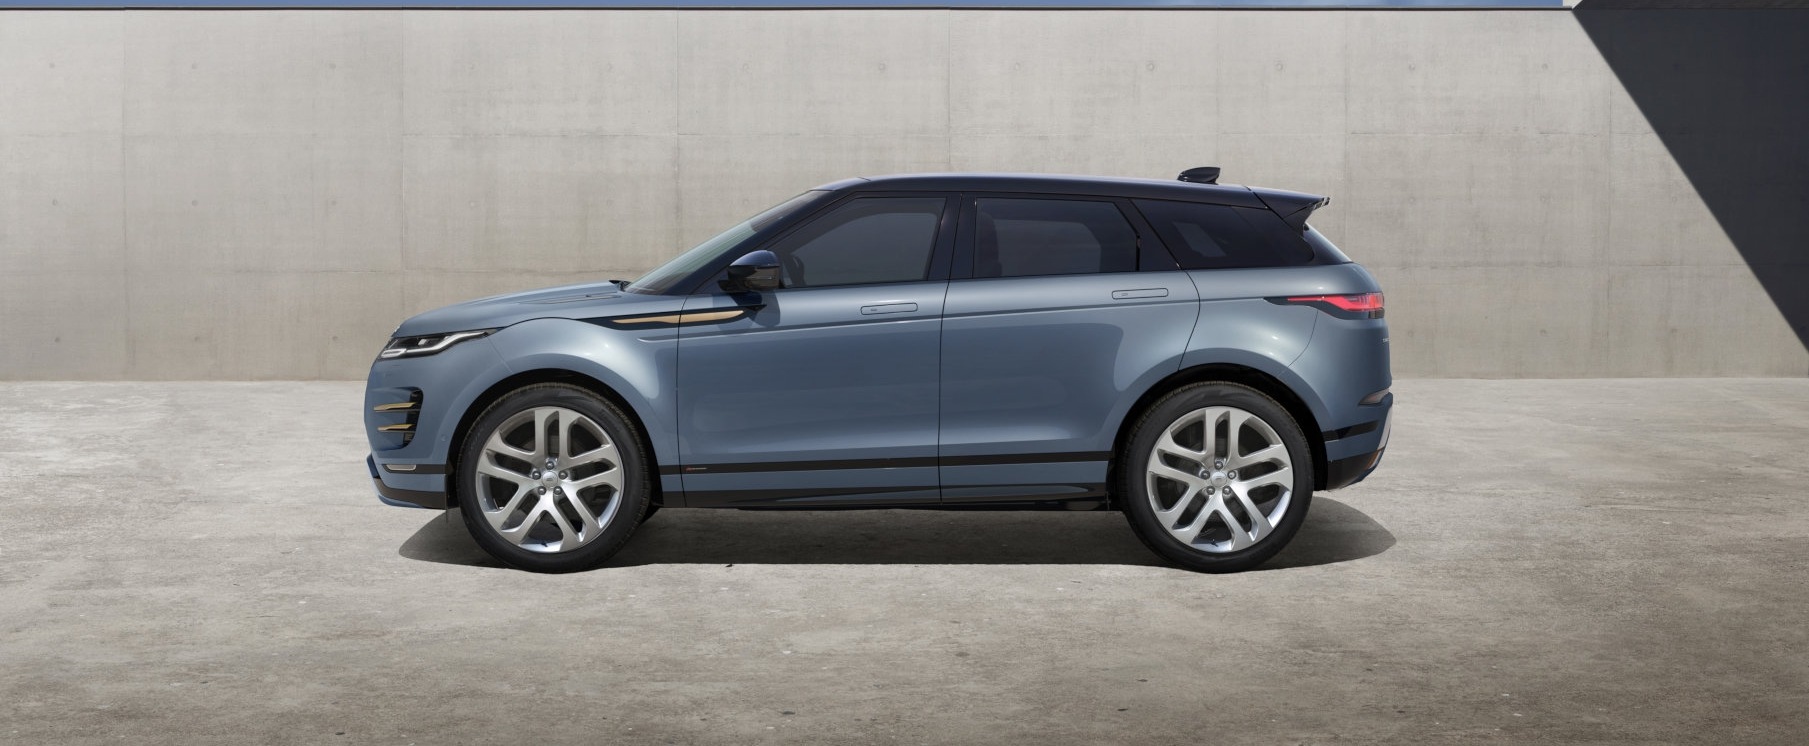 Range Rover Evoque 2019 Estudio 6